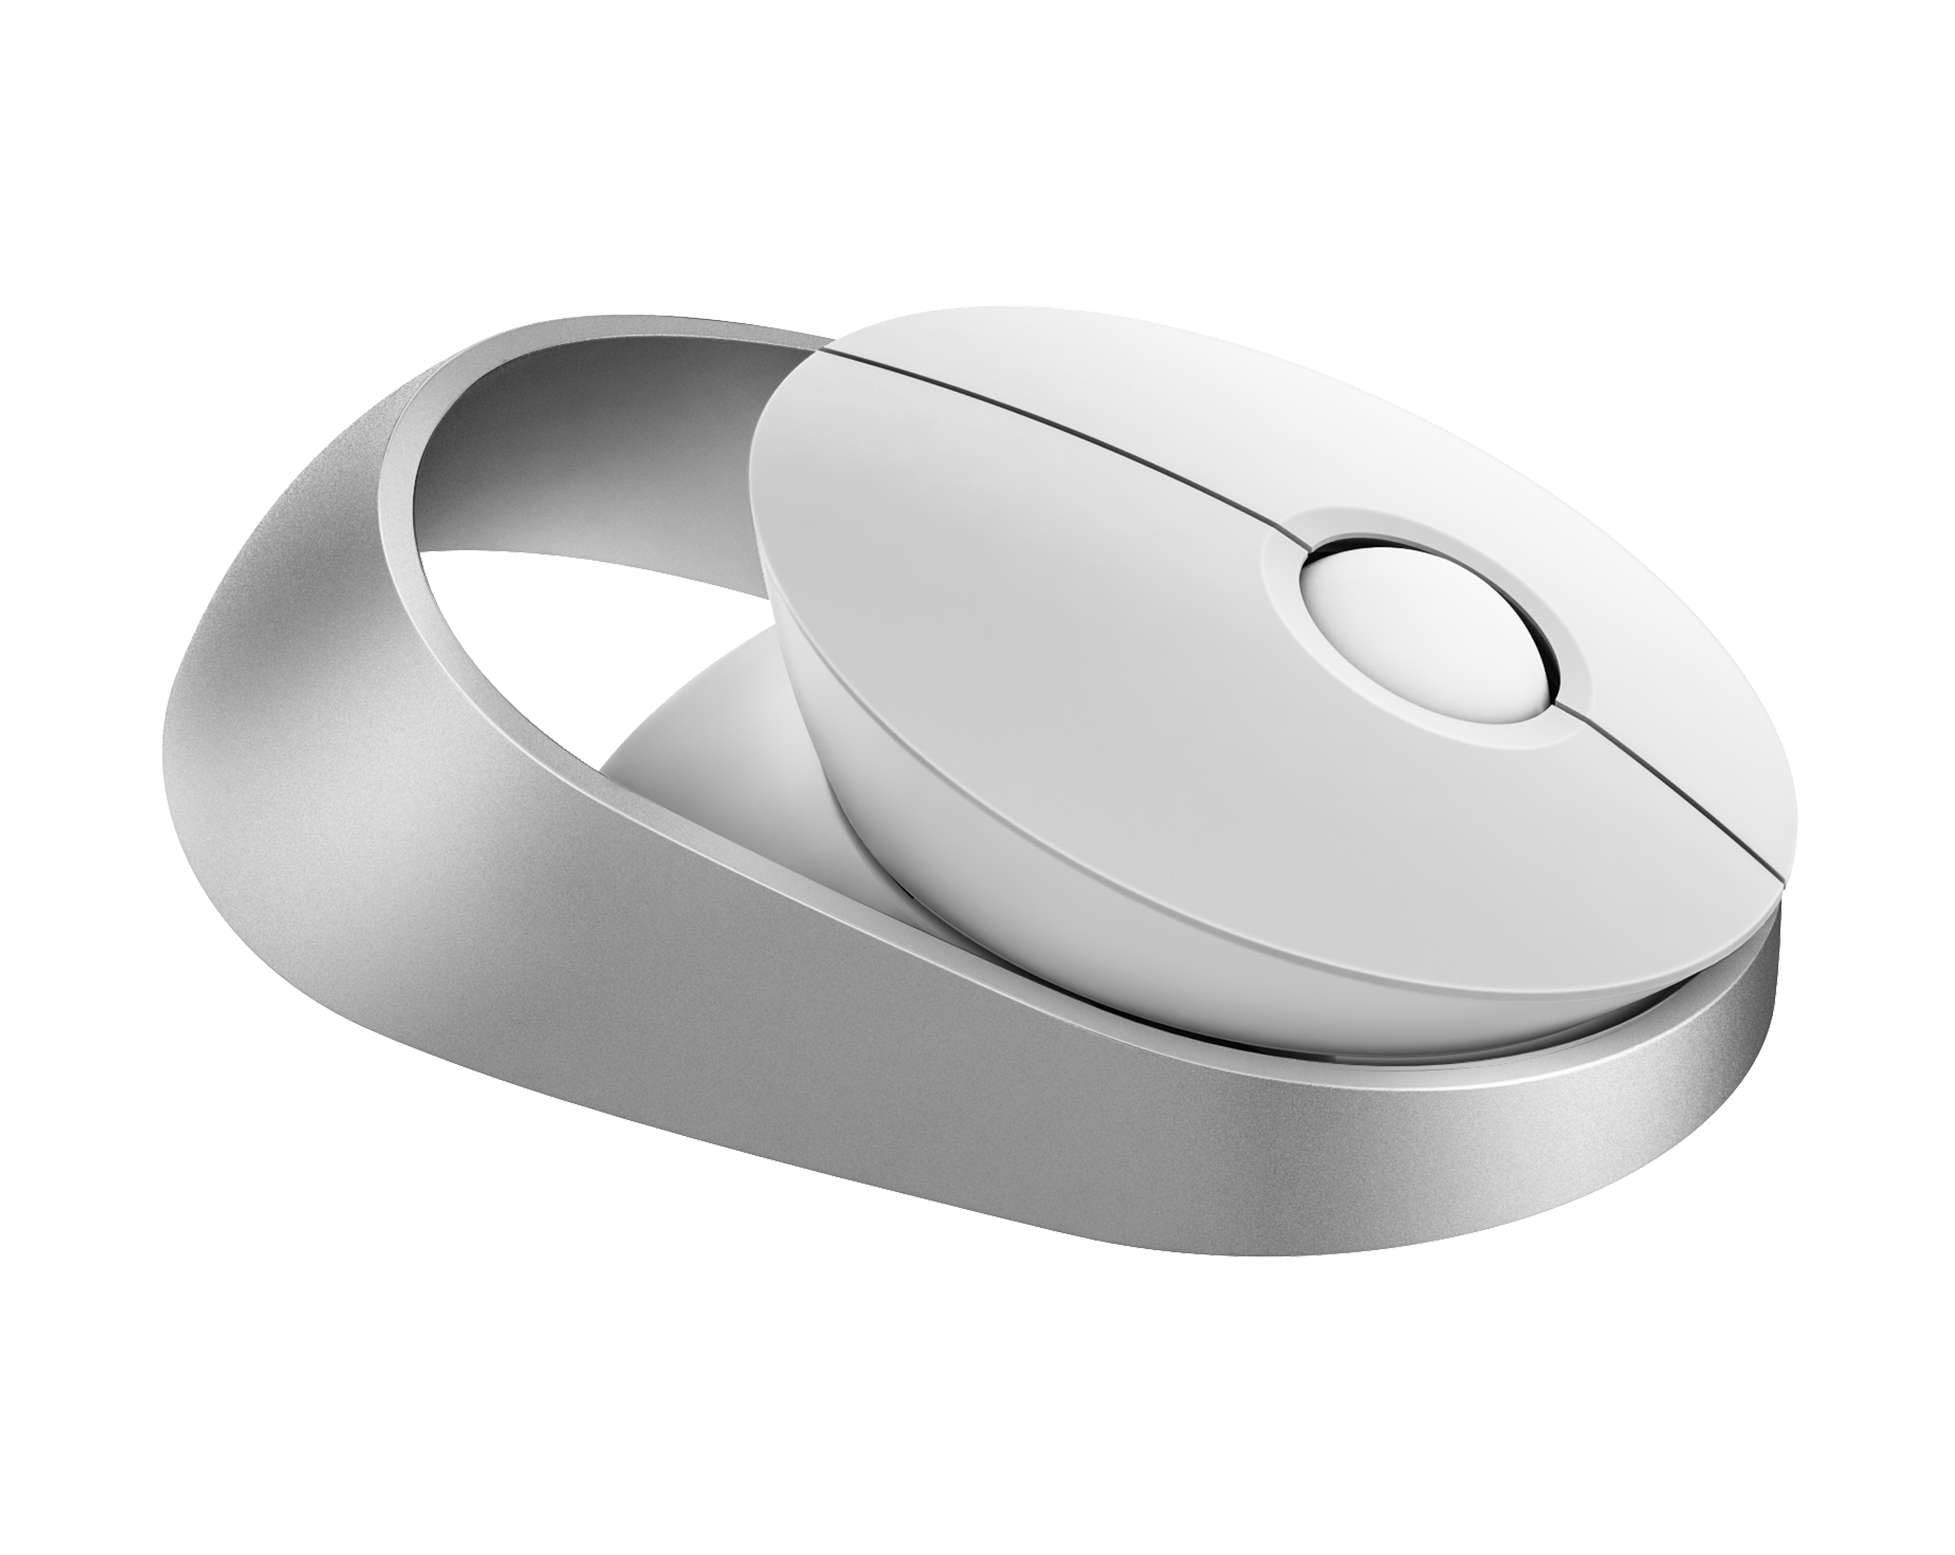 Rapoo Ralemo Air 1 kabellose Maus wireless Mouse 1600 DPI Sensor umweltfreundlicher wiederaufladbarer Akku ergonomisch für Links- und Rechtshänder PC & Mac - weiß